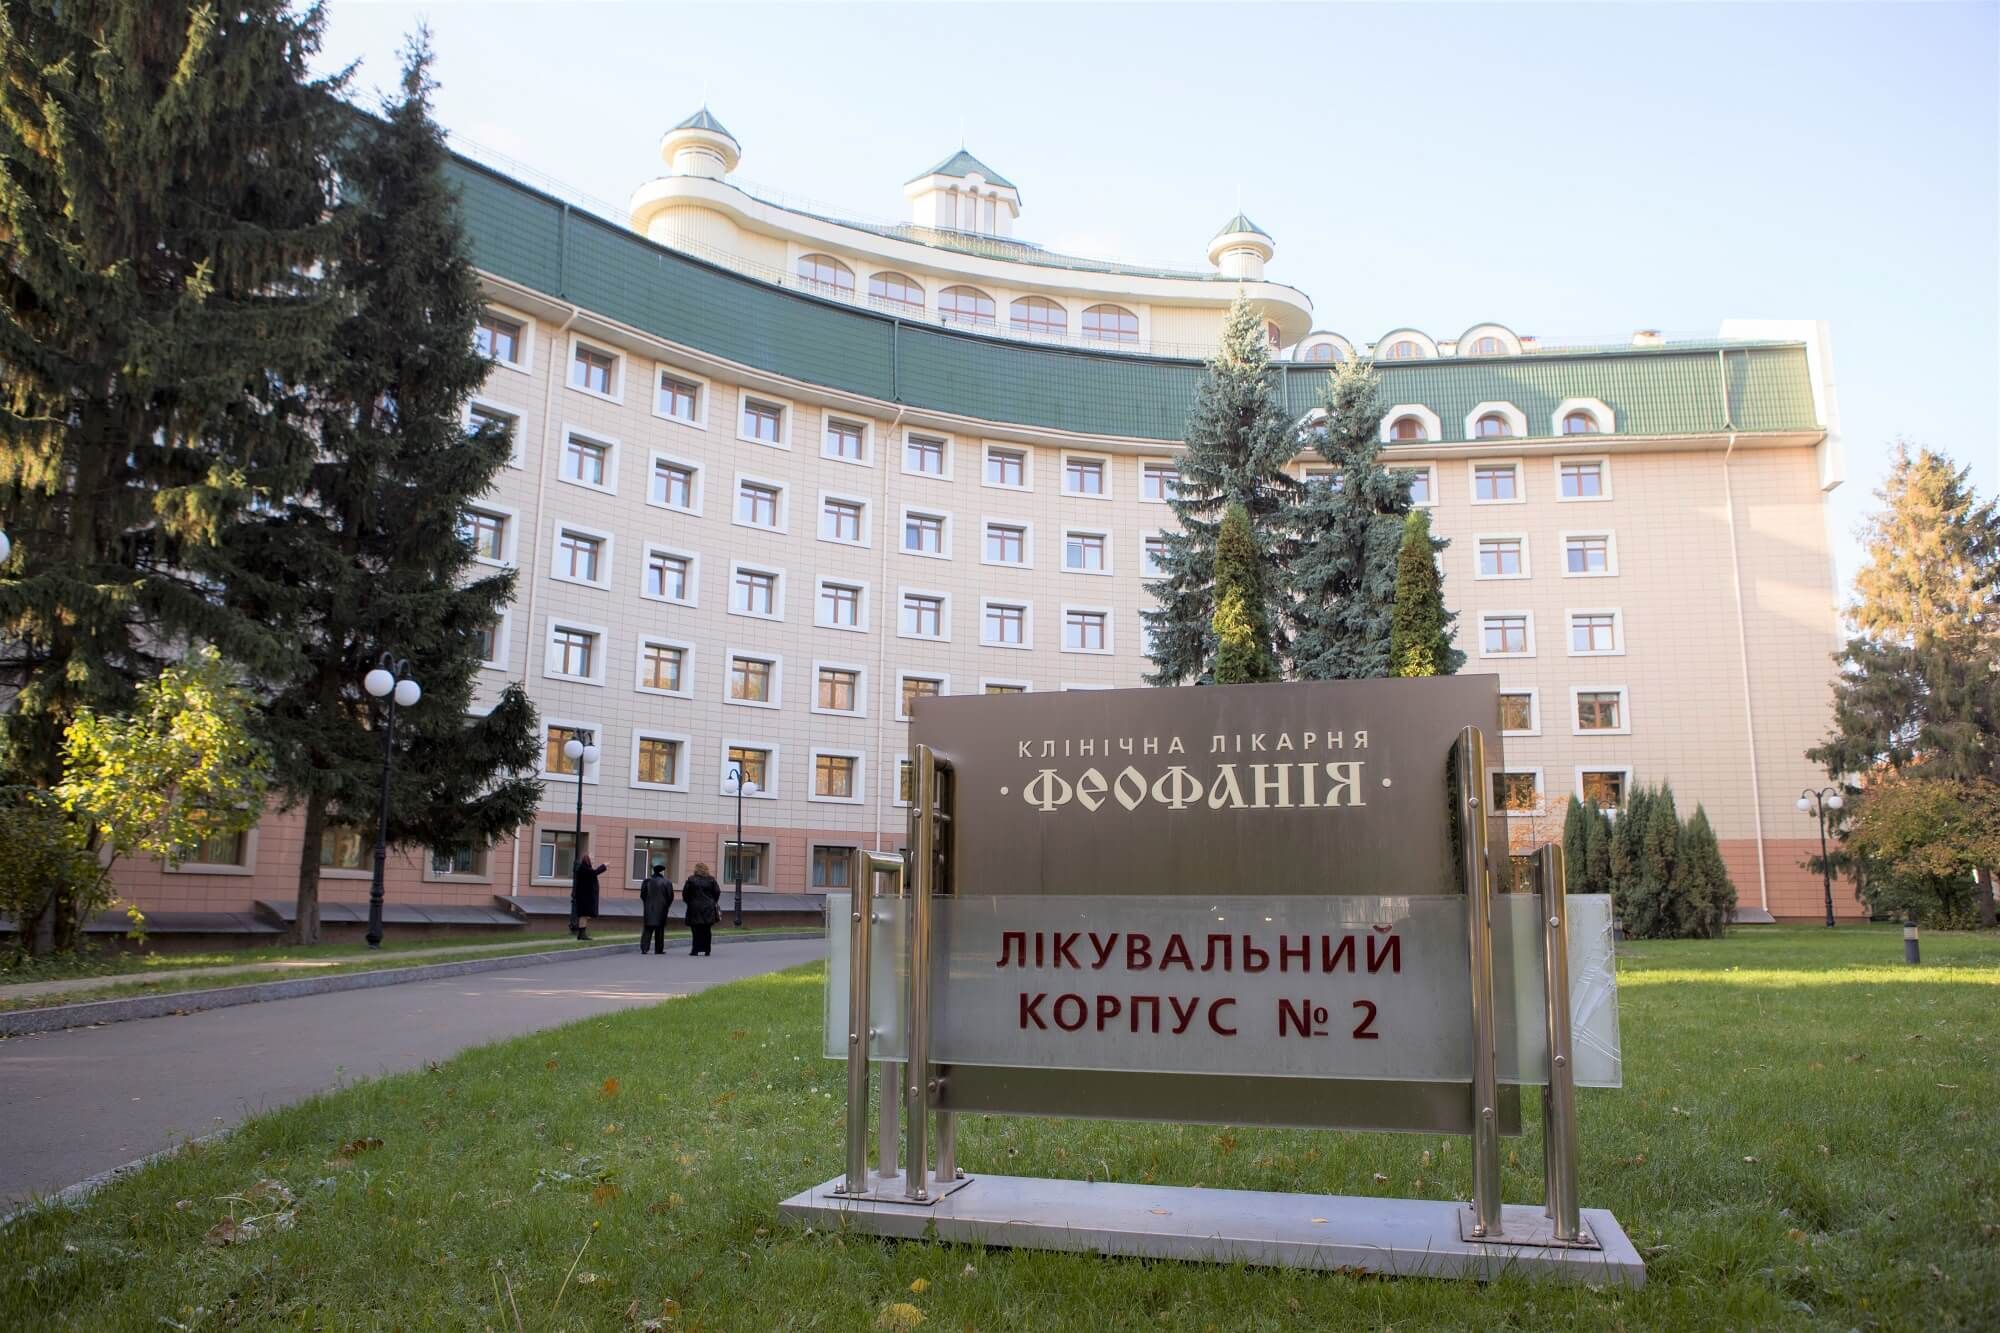 Пленных украинцев по прибытии в Киев отправят в больницу " Феофания"